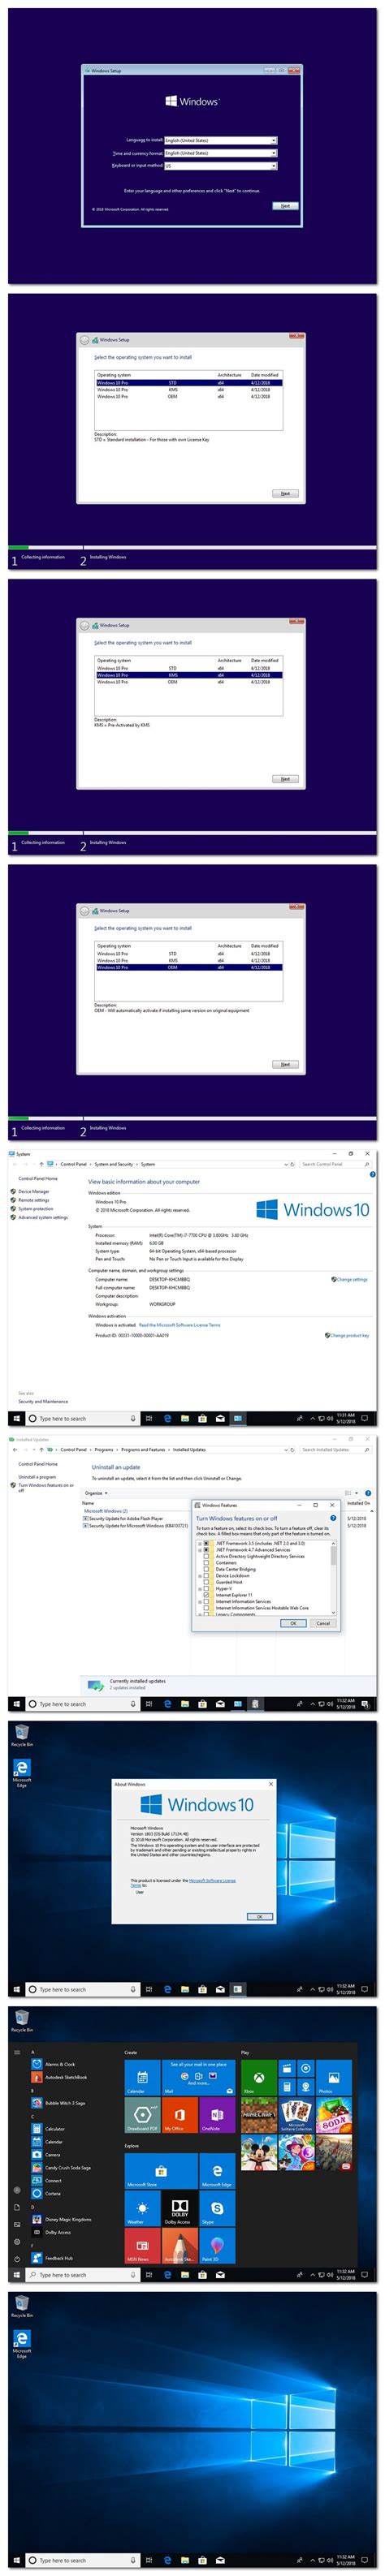 Windows 10 Pro X64 Redstone 4 V1803 Build 1713448 Multi 23 Oem May